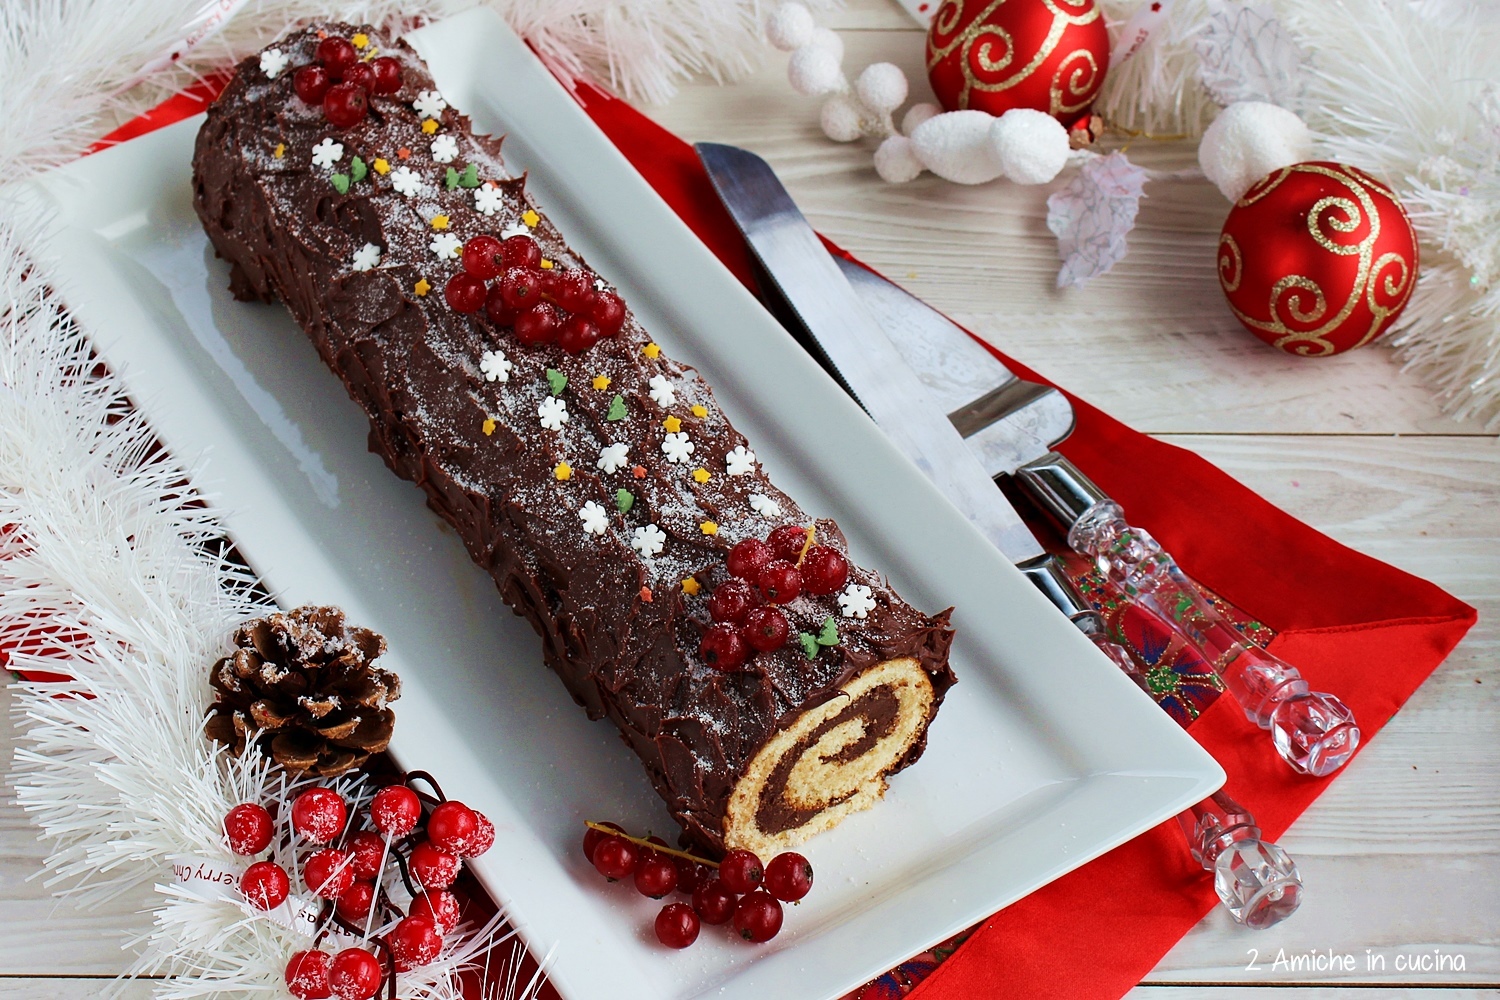 Tronchetto Di Natale Per 8 Persone.Tronchetto Al Cioccolato Buche De Noel 2 Amiche In Cucina